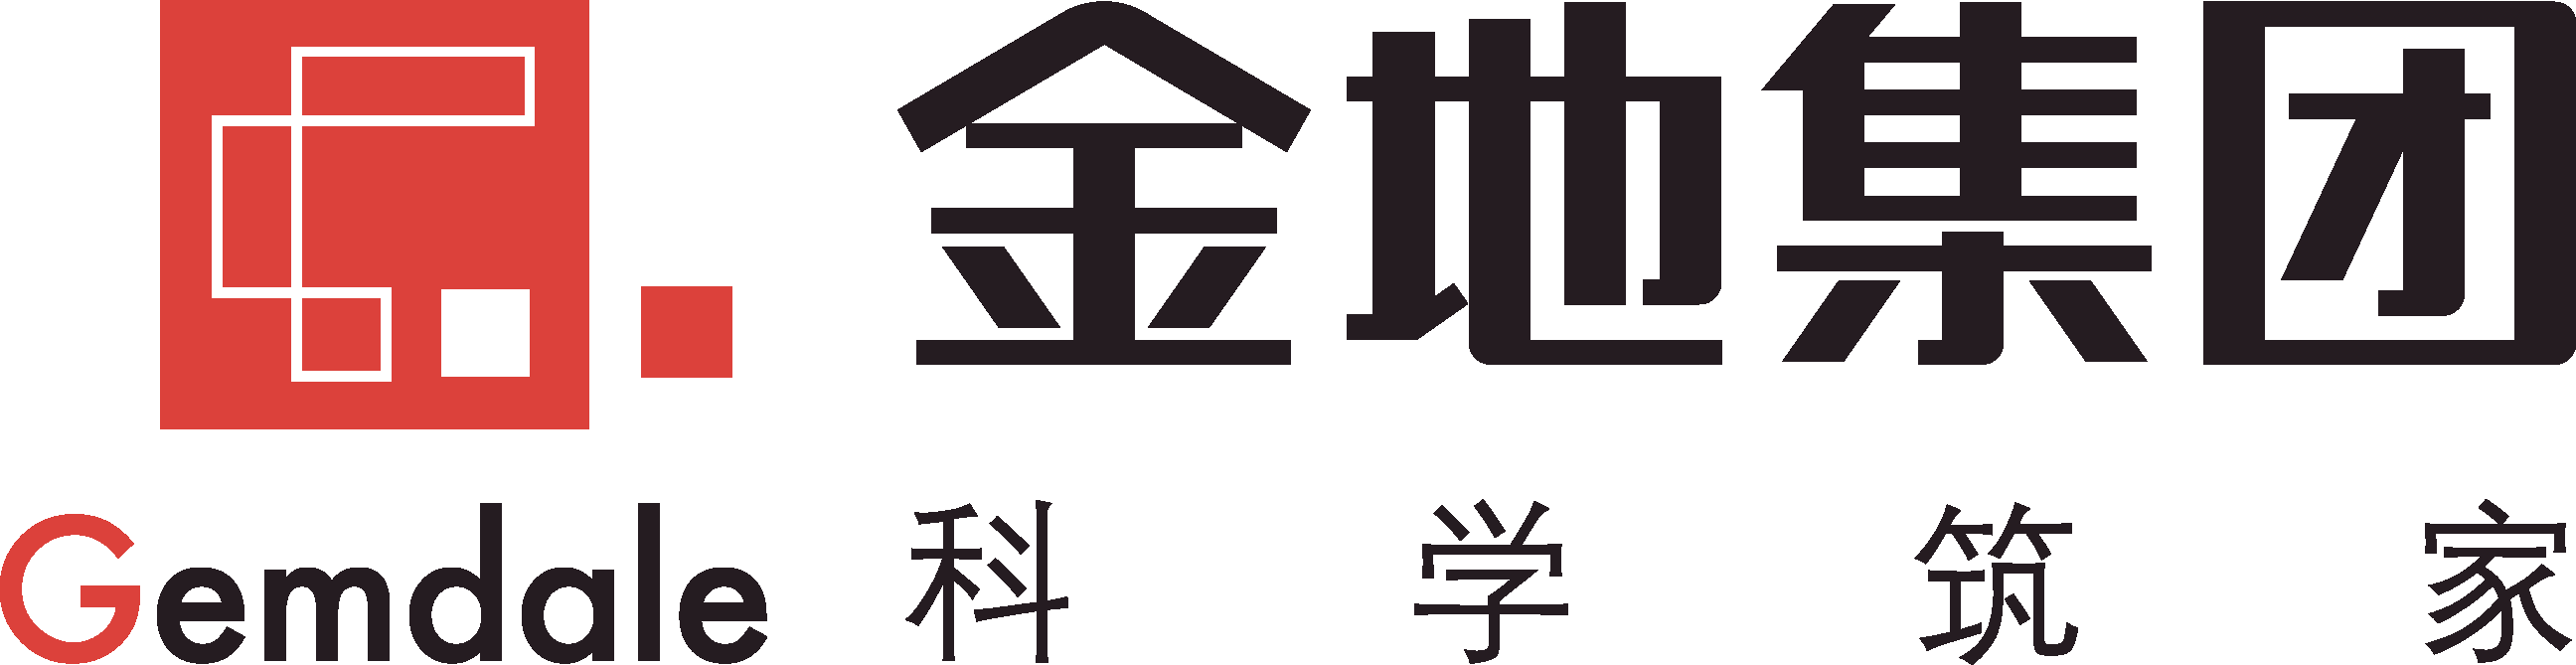 金地(集团)天津投资发展有限公司领域:房地产业规模:500